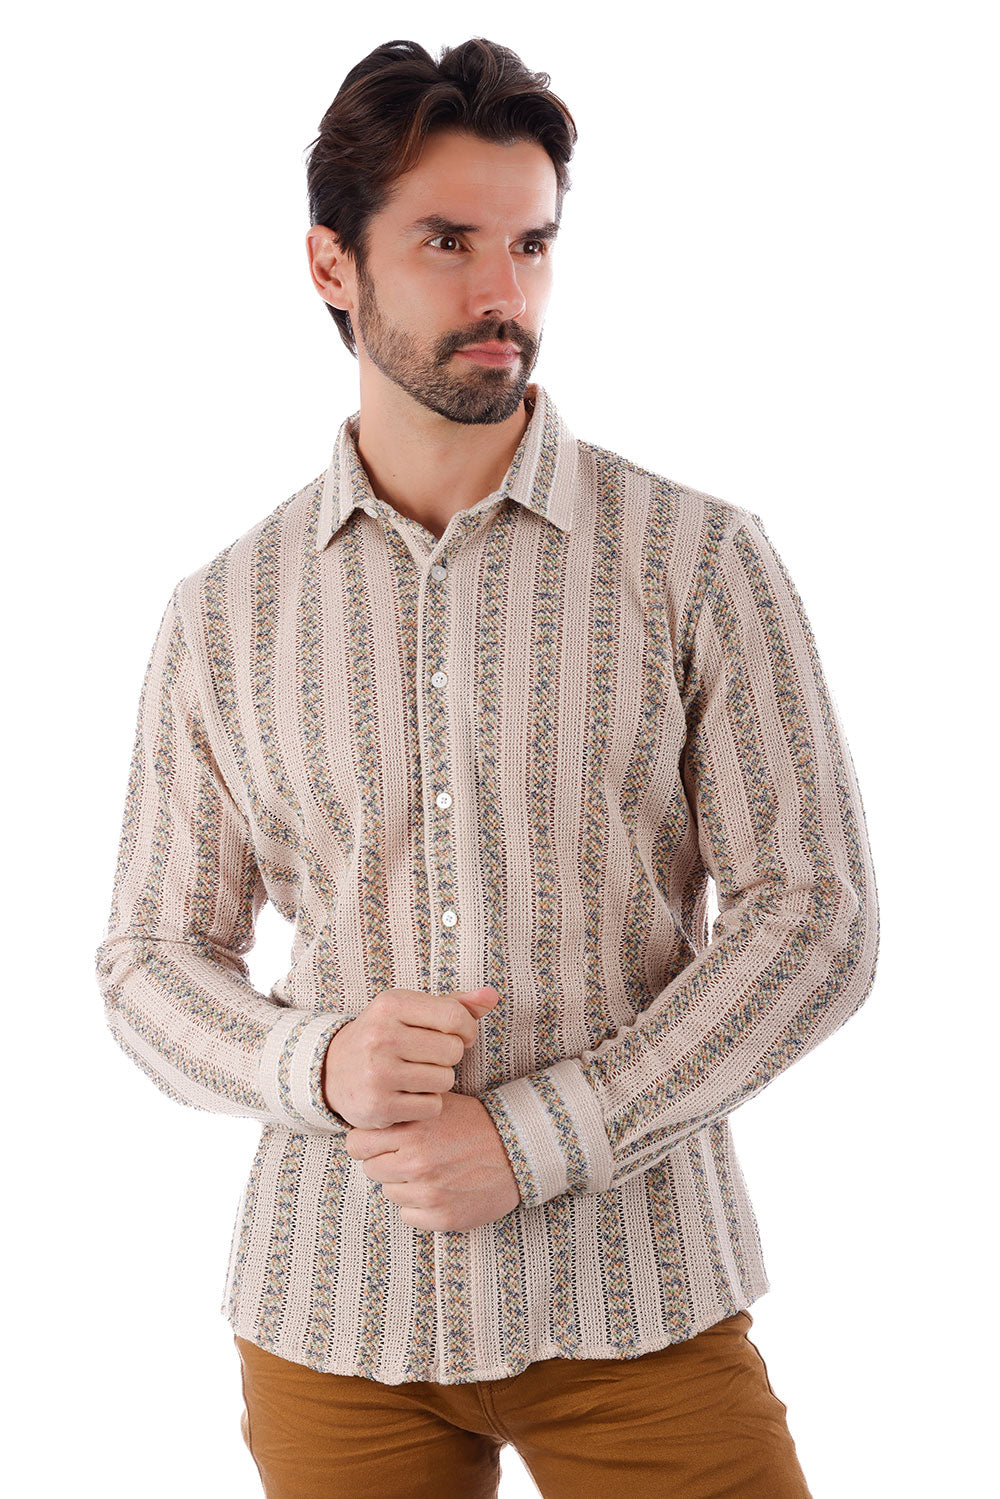 BARABAS Men's Knitted Fabric Button Down Long Sleeve Shirt 4B42 Beige